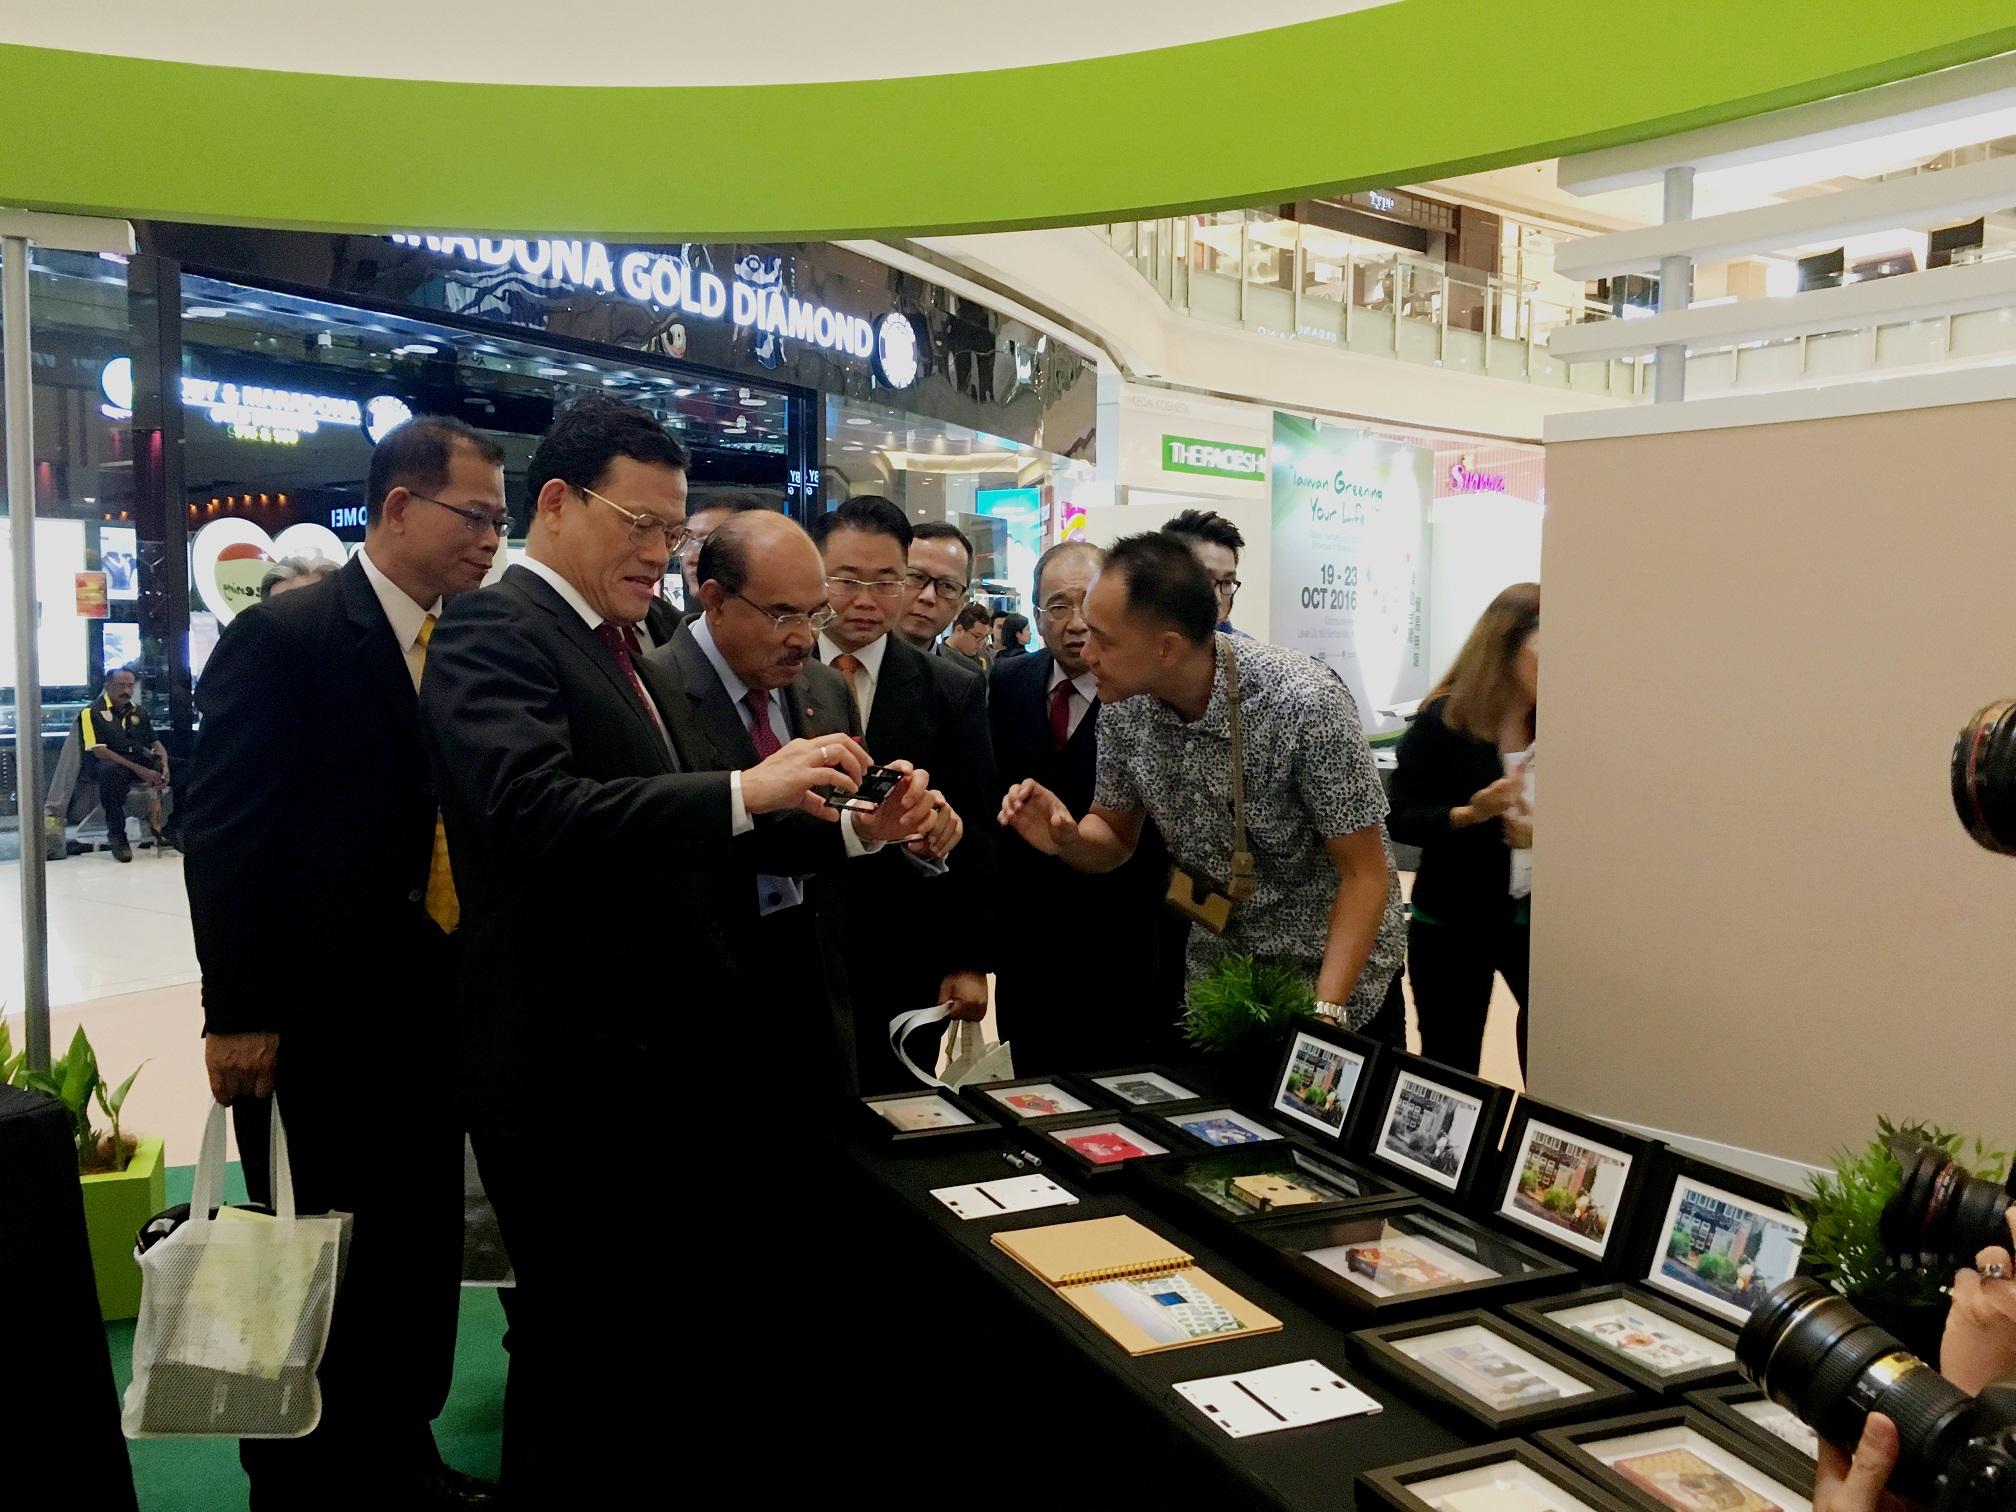 駐馬來西亞臺北經濟文化辦事處大使章計平(左二)、馬來西亞綠色商業協會主席Tan Sri Datuk Mustafa Mansur(左三)參訪臺灣廠商之展示品。